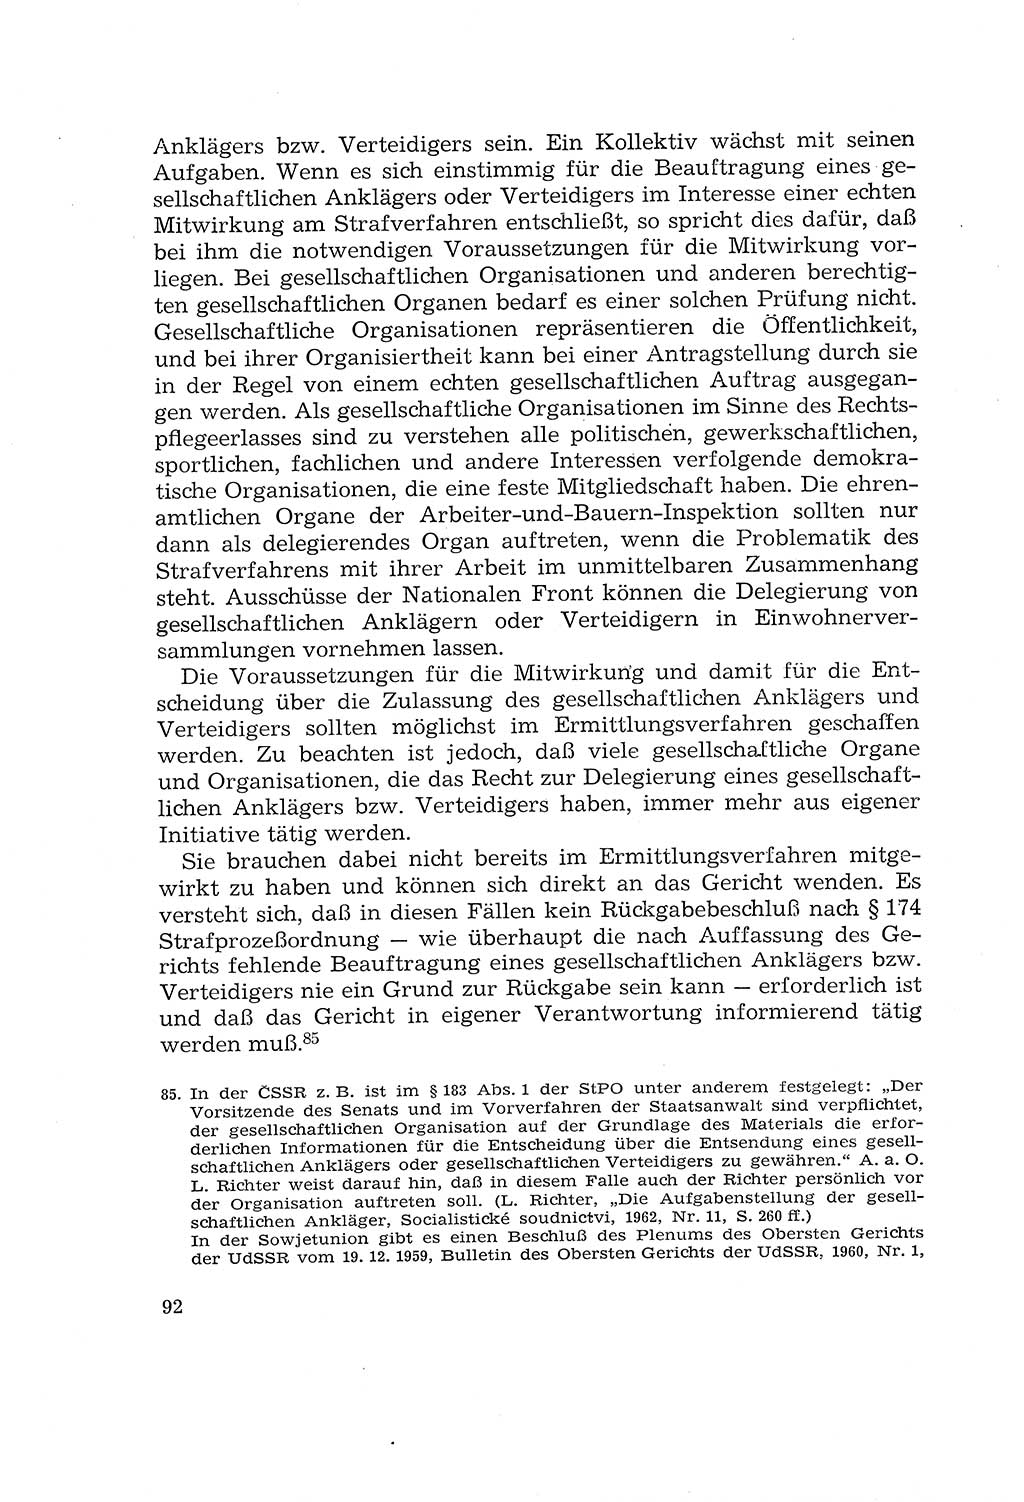 Die Mitwirkung der Werktätigen am Strafverfahren [Deutsche Demokratische Republik (DDR)] 1966, Seite 92 (Mitw. Str.-Verf. DDR 1966, S. 92)